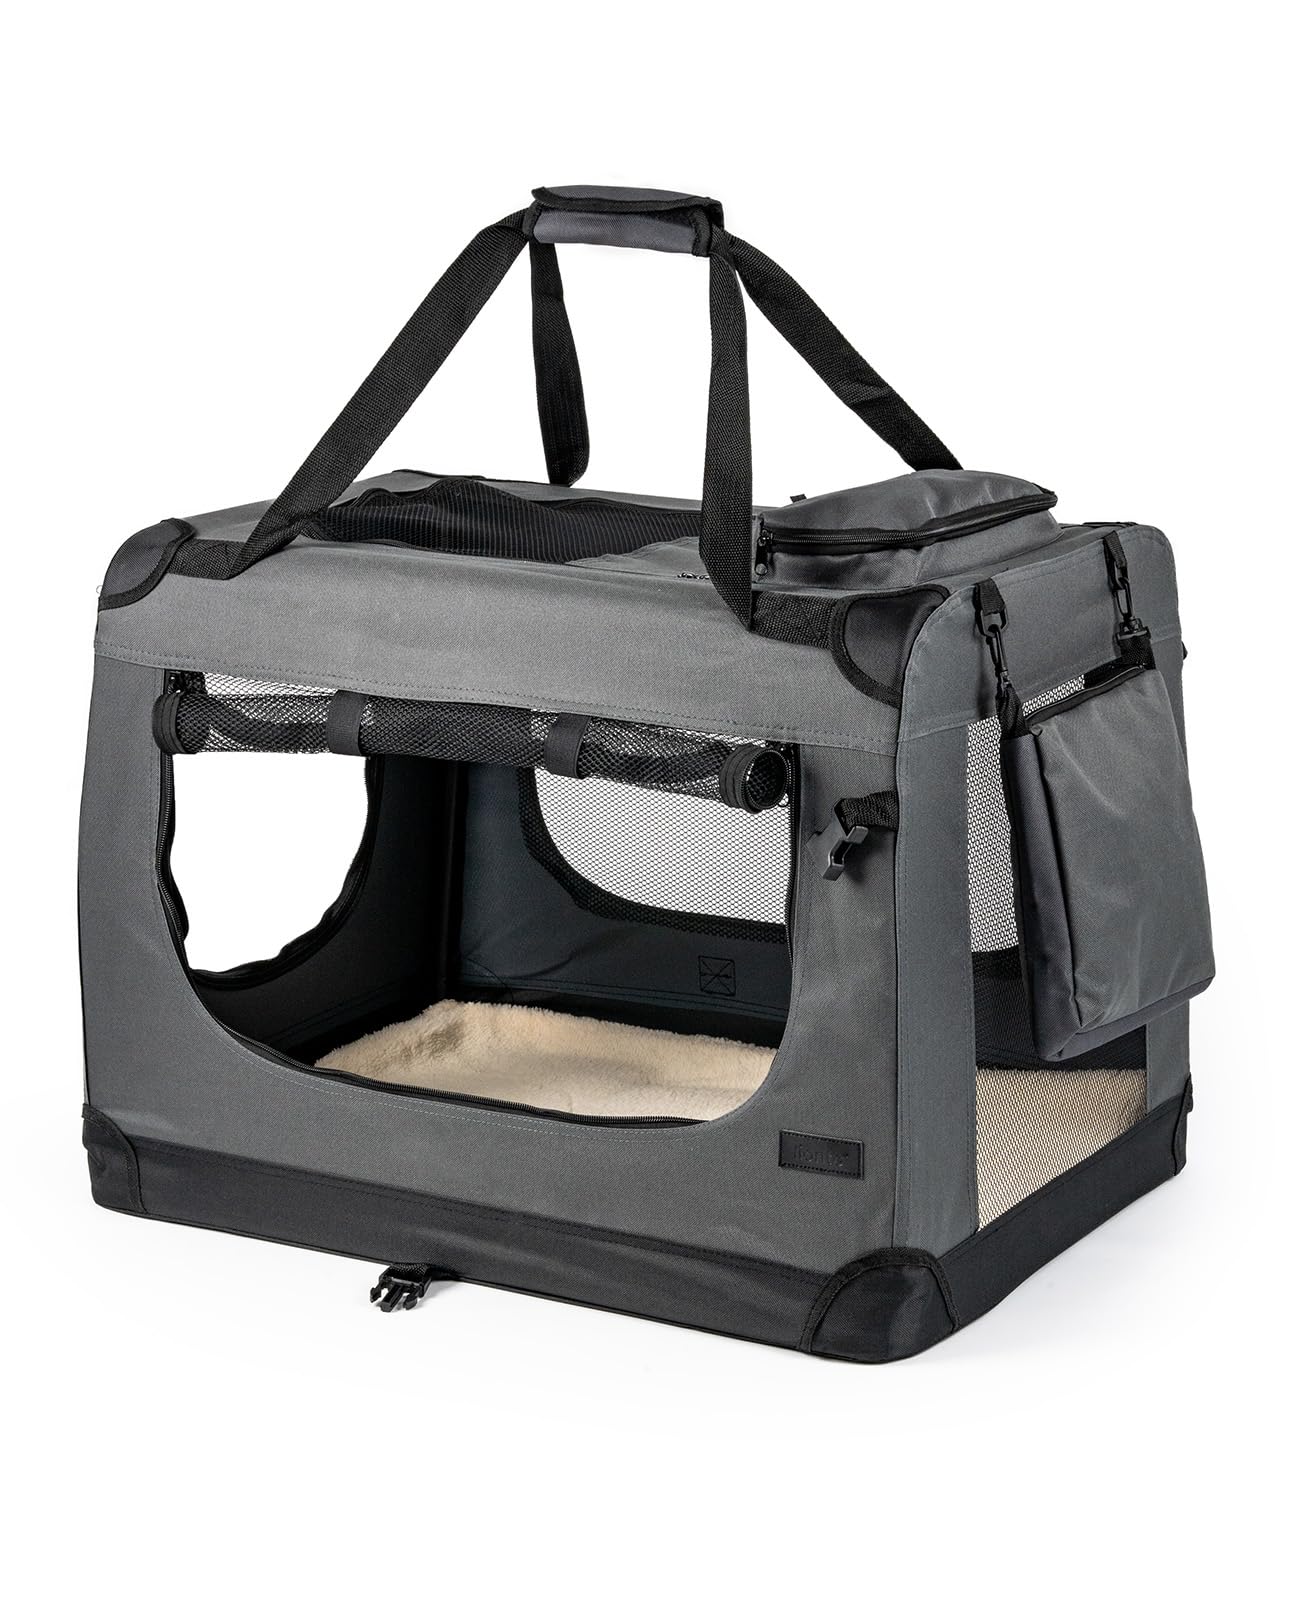 lionto Hundetransportbox faltbar für Reise & Auto, 82x58x58 cm, stabile Transportbox mit Tragegriffen & Decke für Katzen & Hunde bis 18 kg, robuste Hundebox aus Stoff für klein & groß, grau